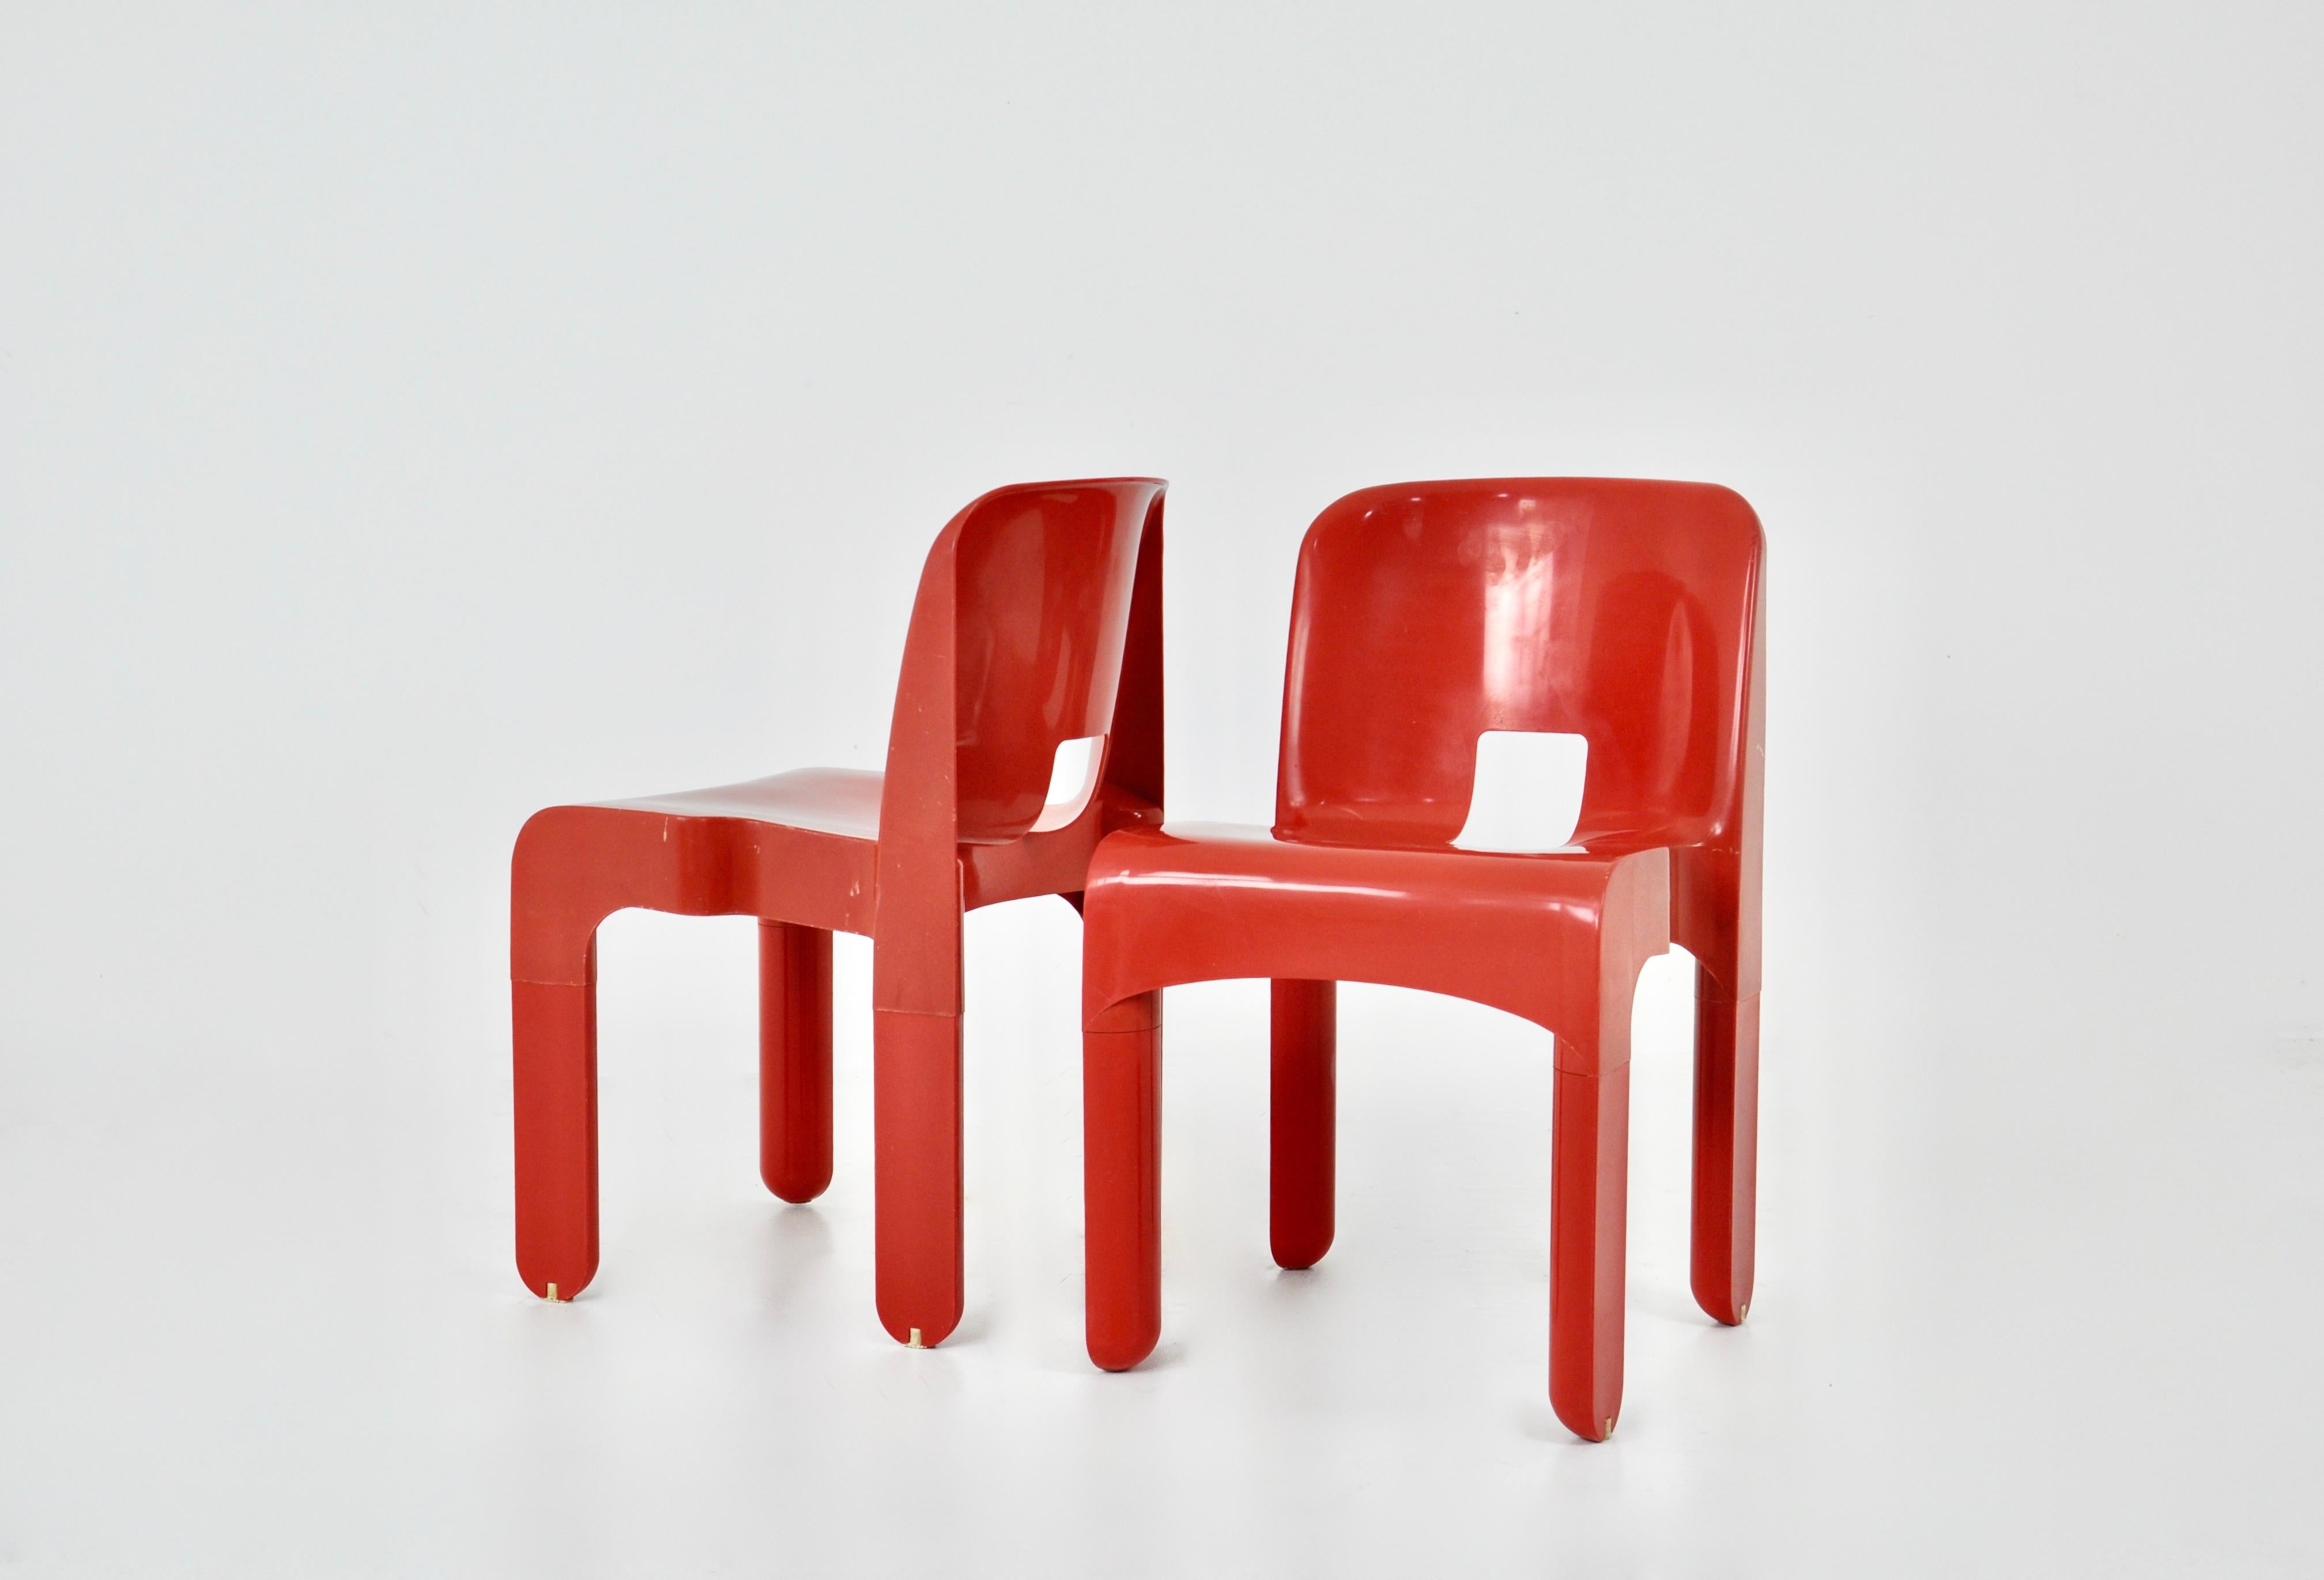 Chaises rouges de Joe Colombo. Modèle 4867. Estampillé sous les chaises. Usure due au temps et à l'âge des chaises.
